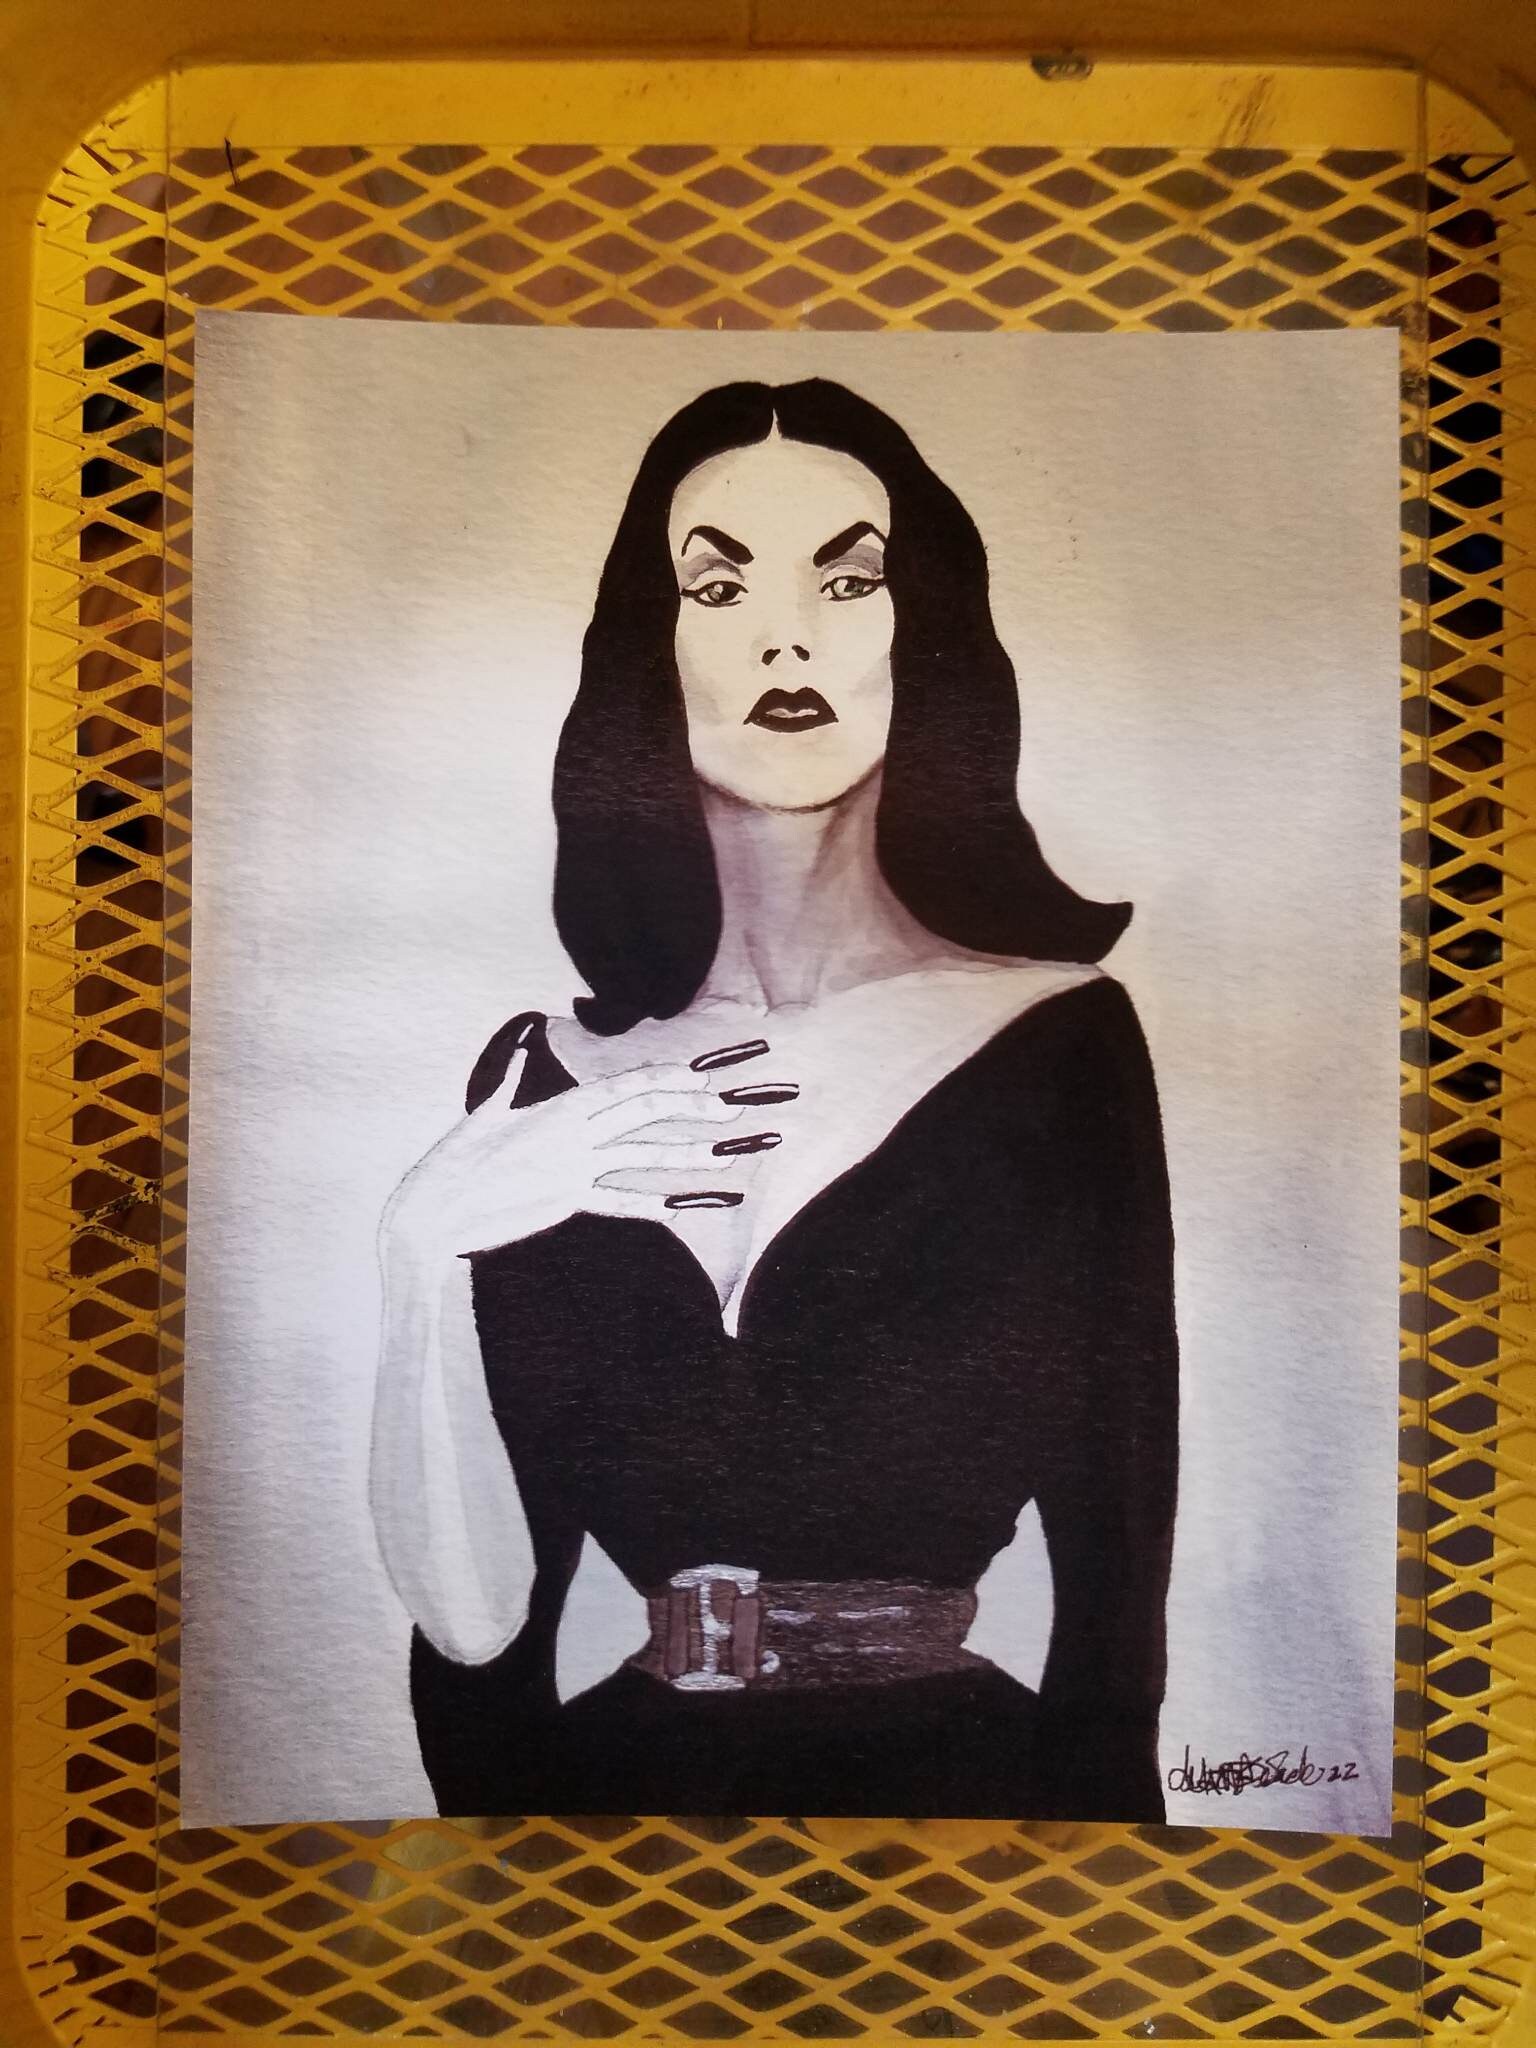 Vintage Wall Art Canvas, bruxas bonitas, vampiros e demônios, cartaz sexy,  impressão, decoração para casa, sem moldura